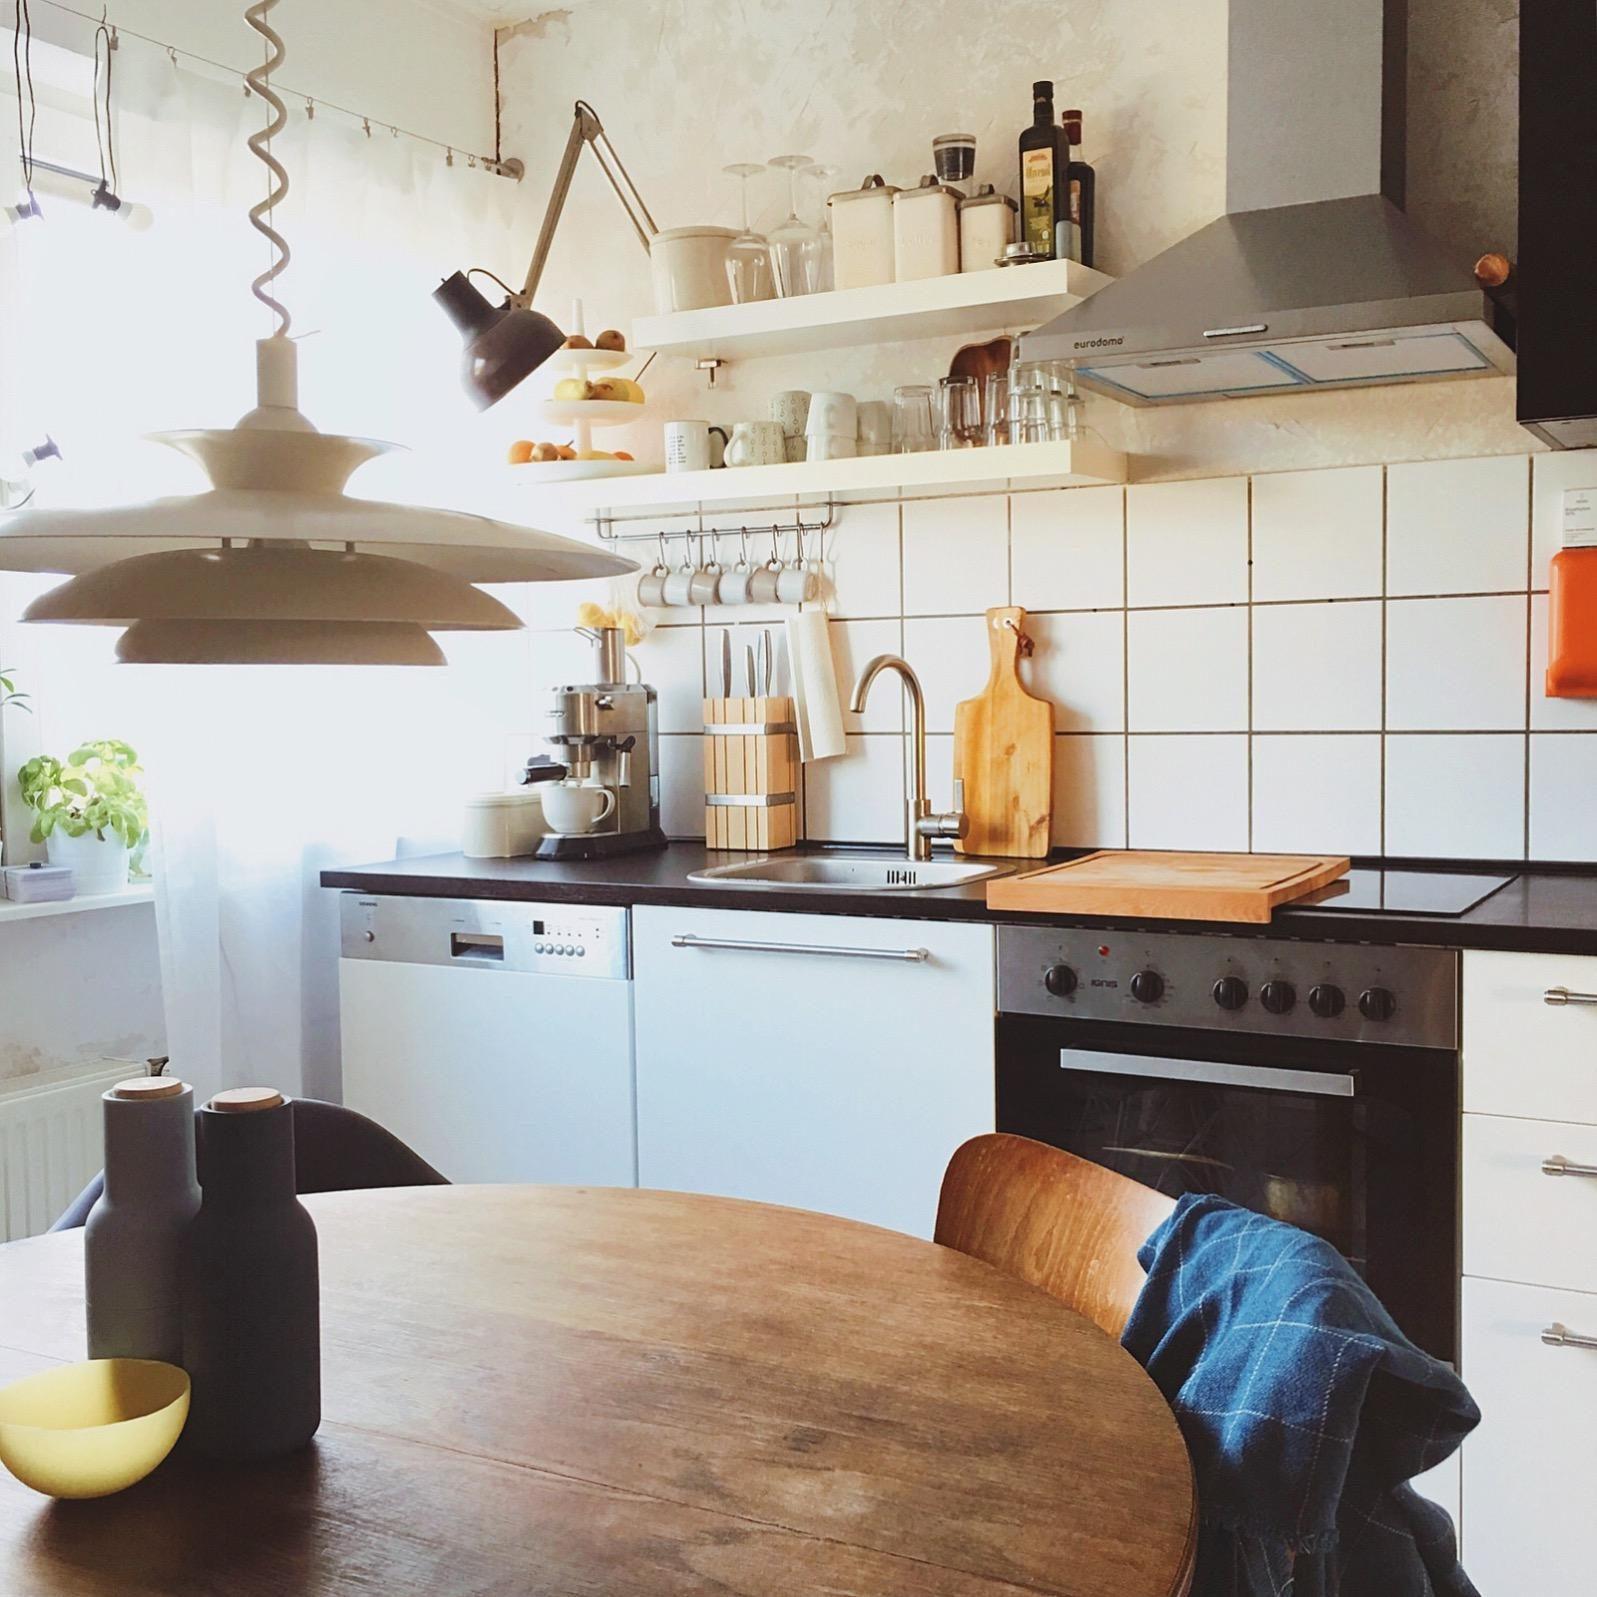 Unsere Küche. Mein Liebslingsraum.
#küche #kitchen 